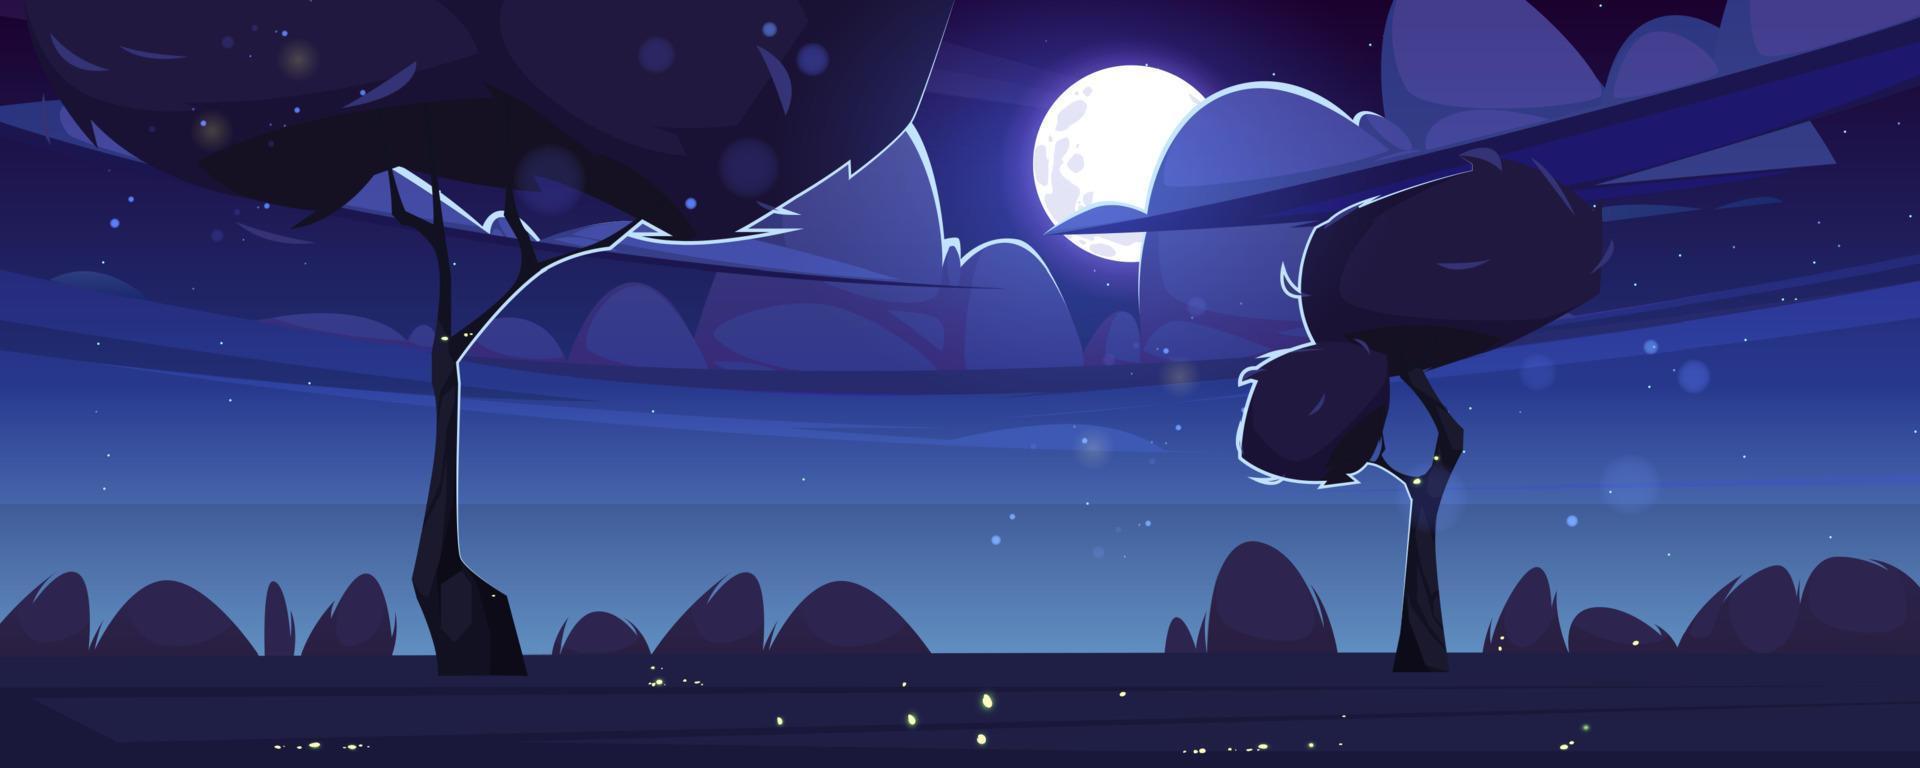 paisaje de verano con luna en el cielo por la noche vector